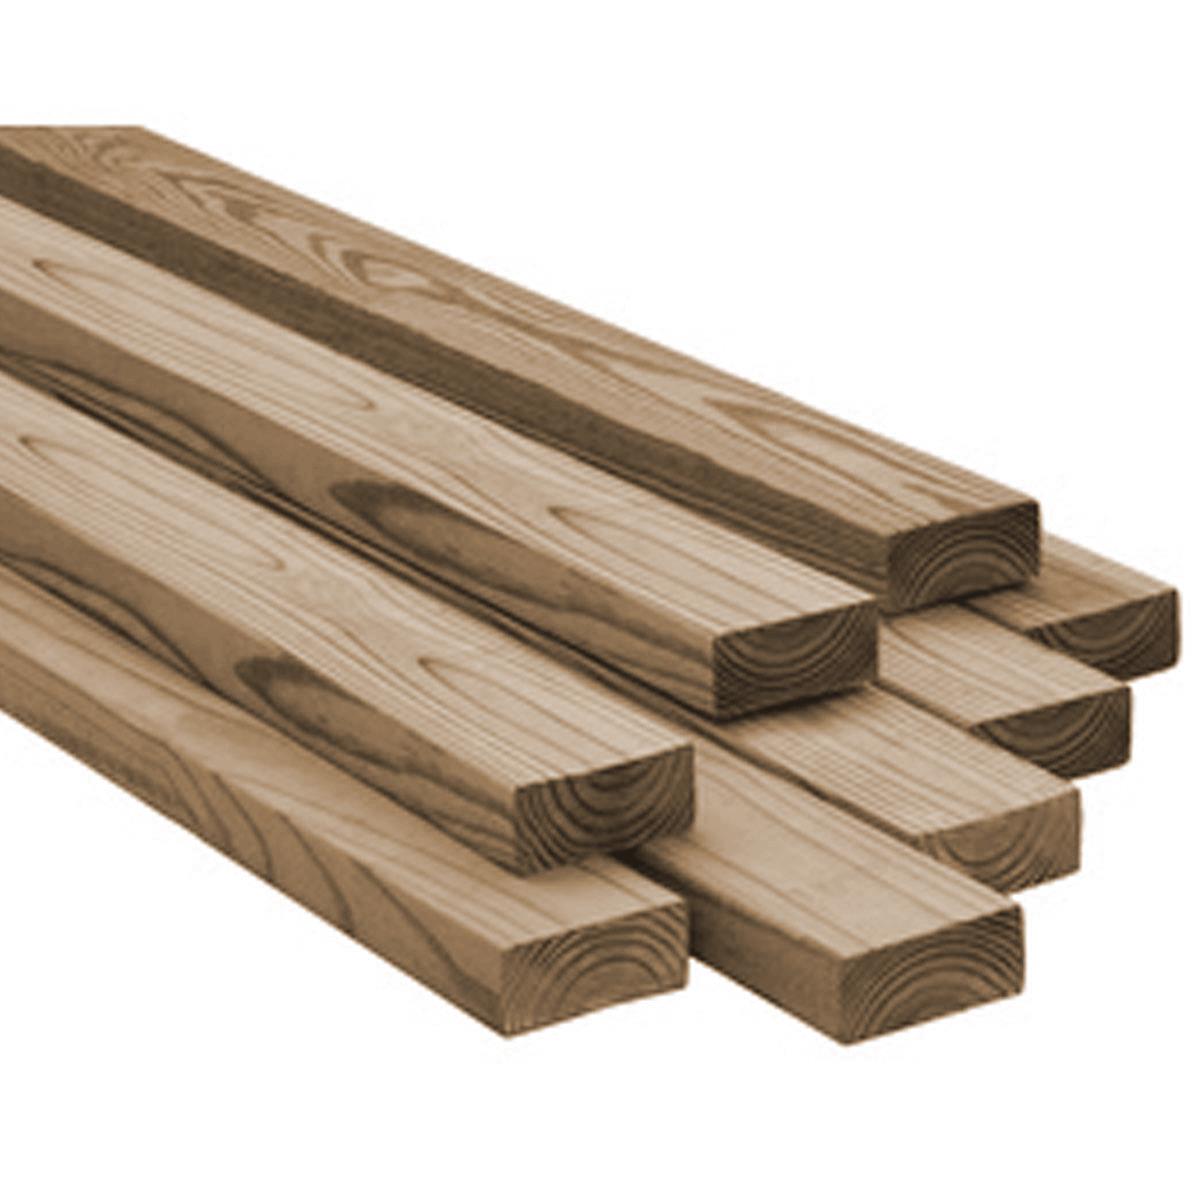 BRN Pressure Treated Lumber - 2 x 6 x 10-ft